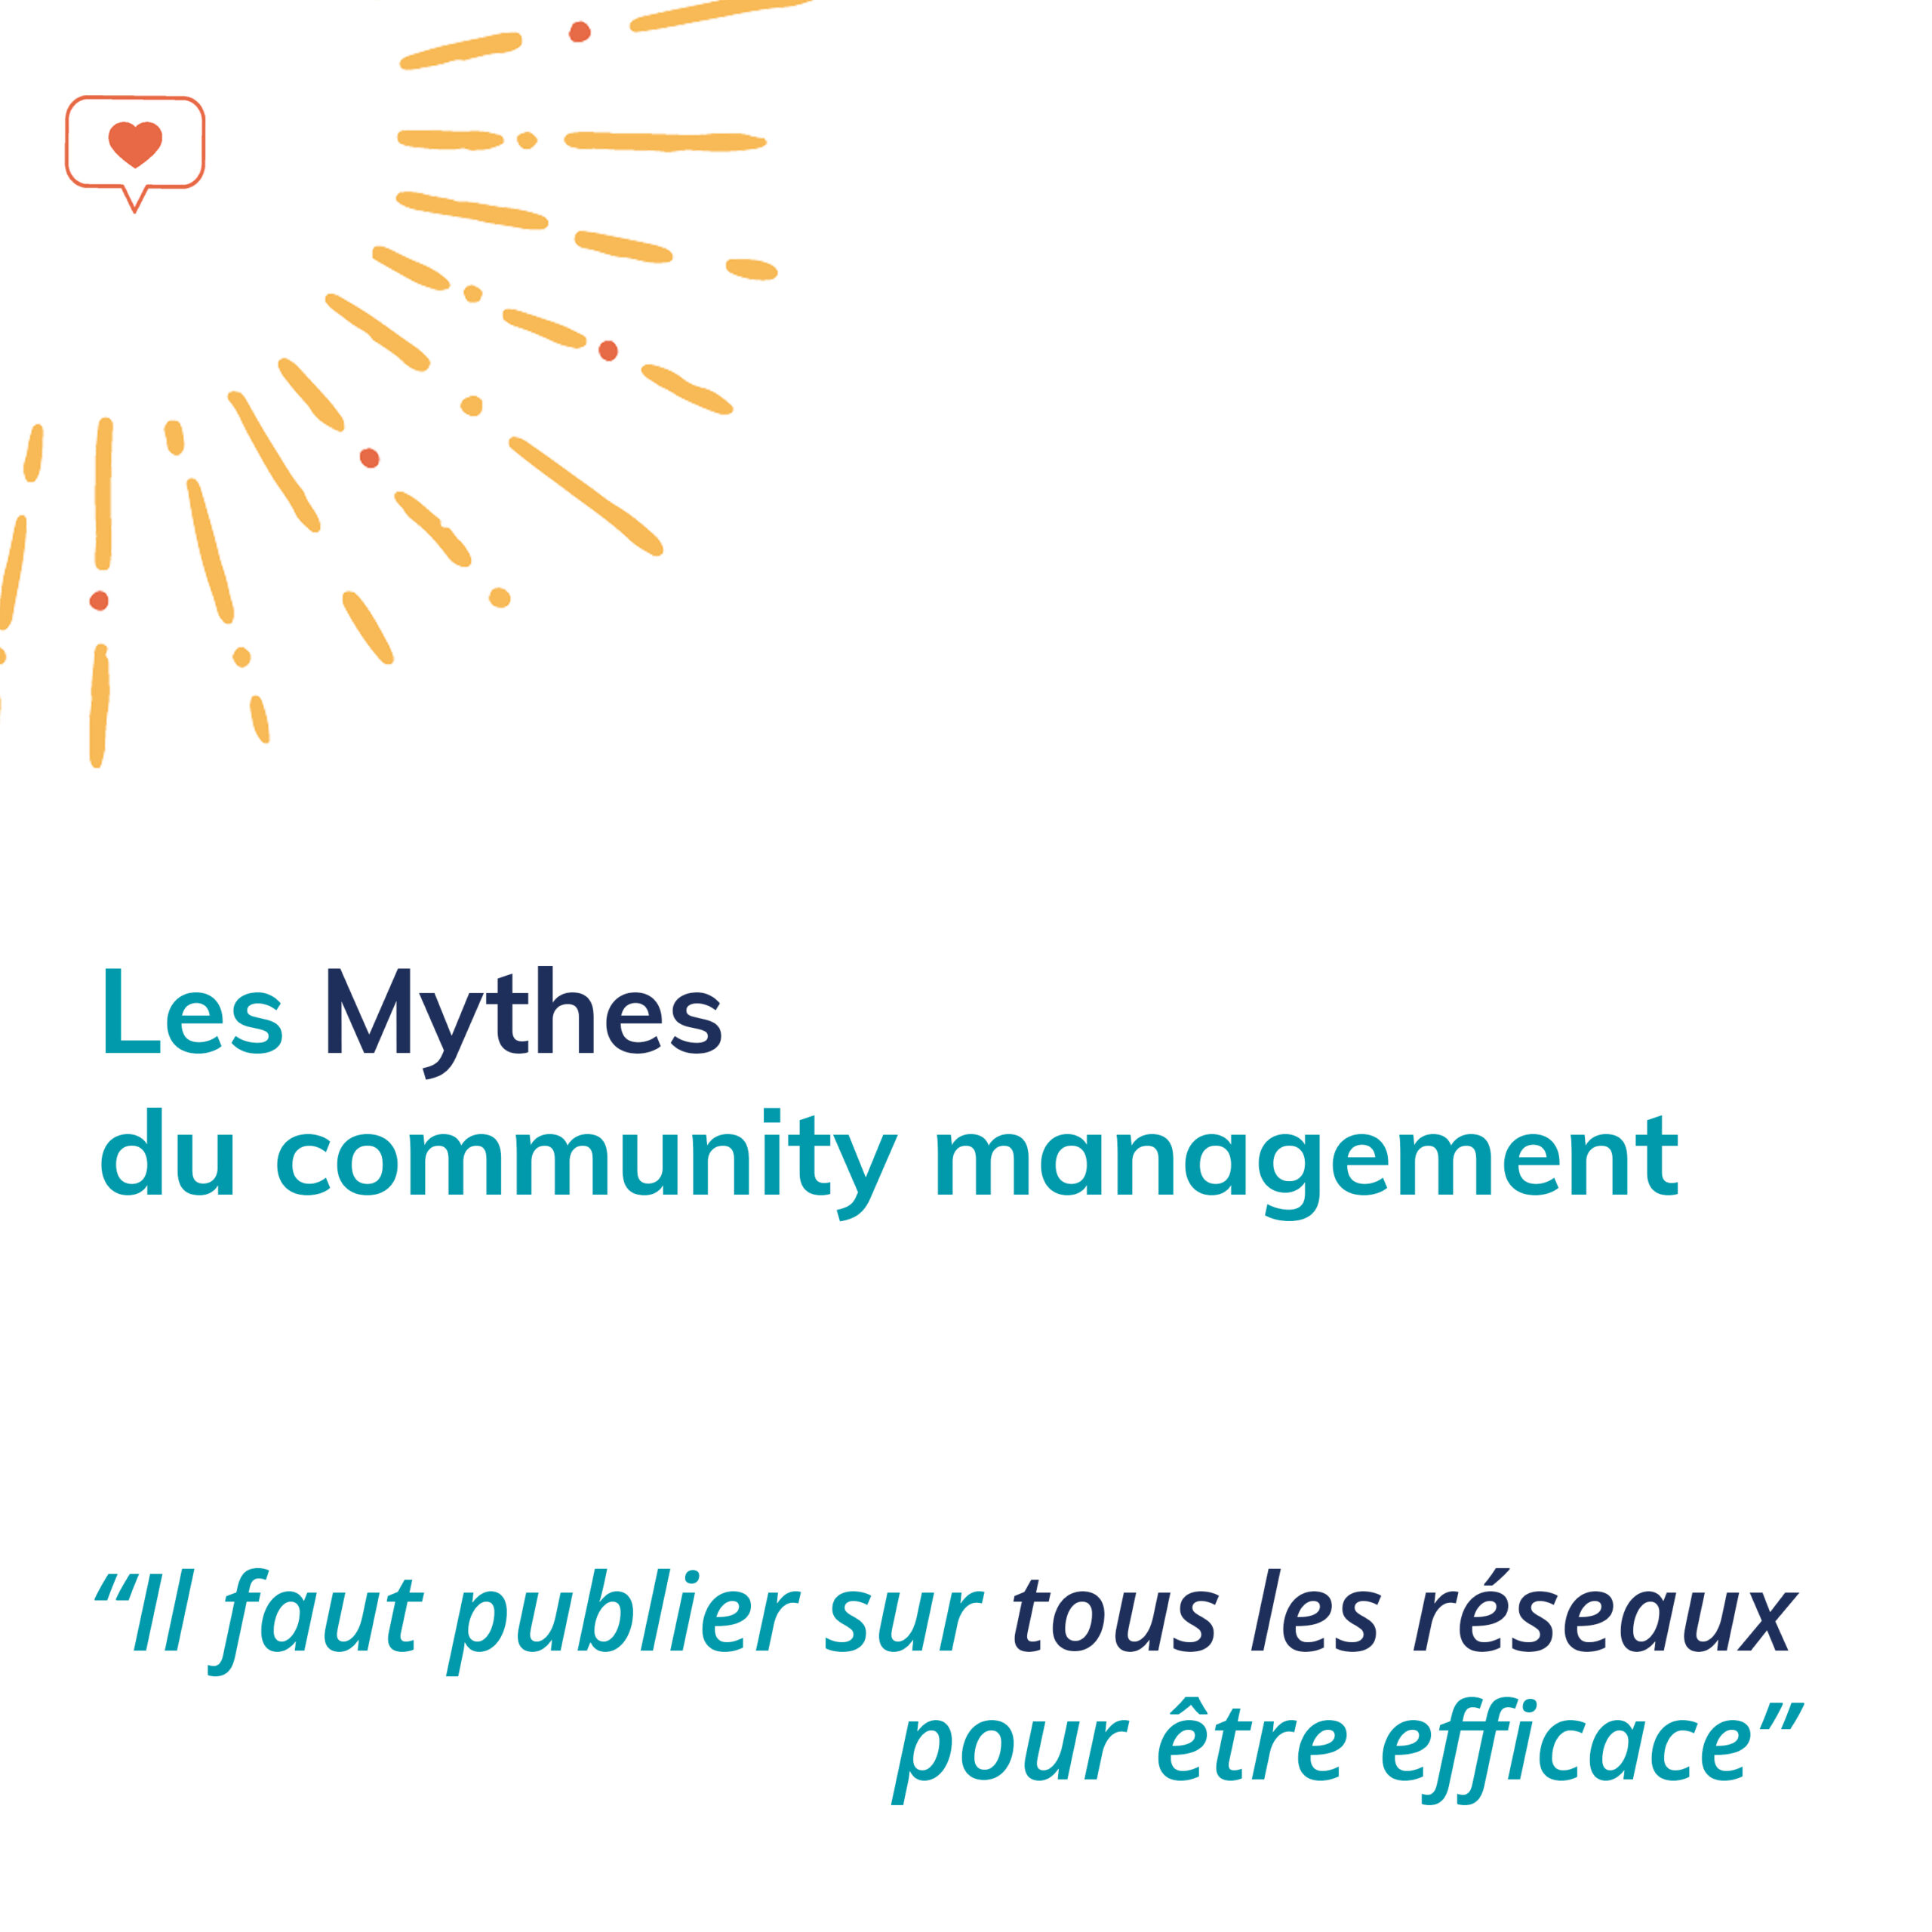 Visuel sur les Mythes du community managment : publier sur tous les réseaux sociaux